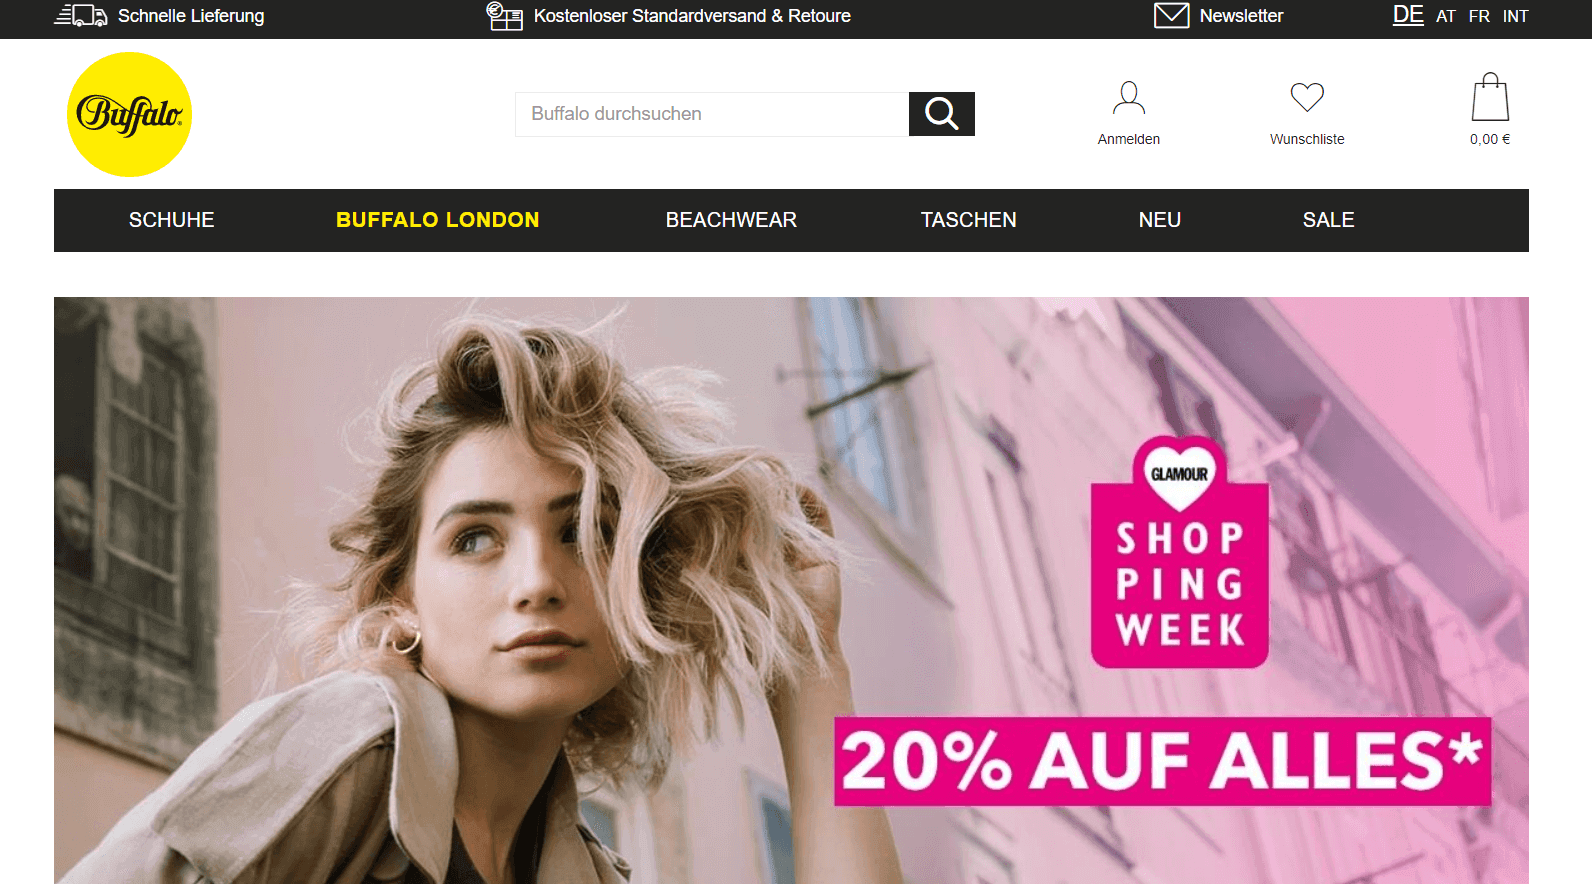 Buffalo купить онлайн с доставкой в Украину - Meest Shopping - 2